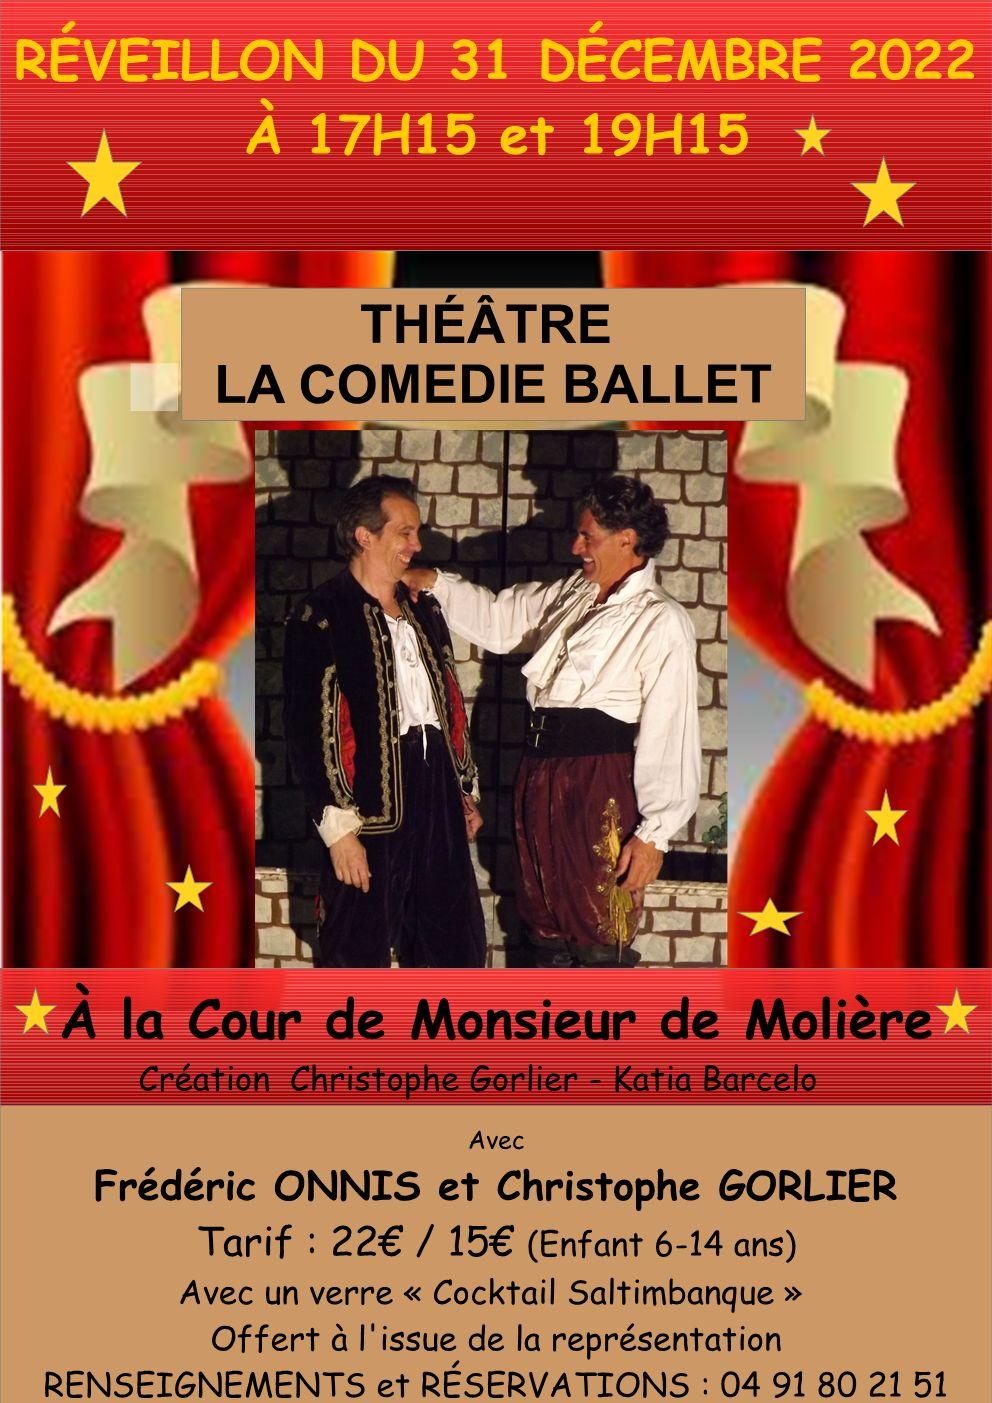 Affiche reveillon 31 decembre 2022 theatre la comedie ballet